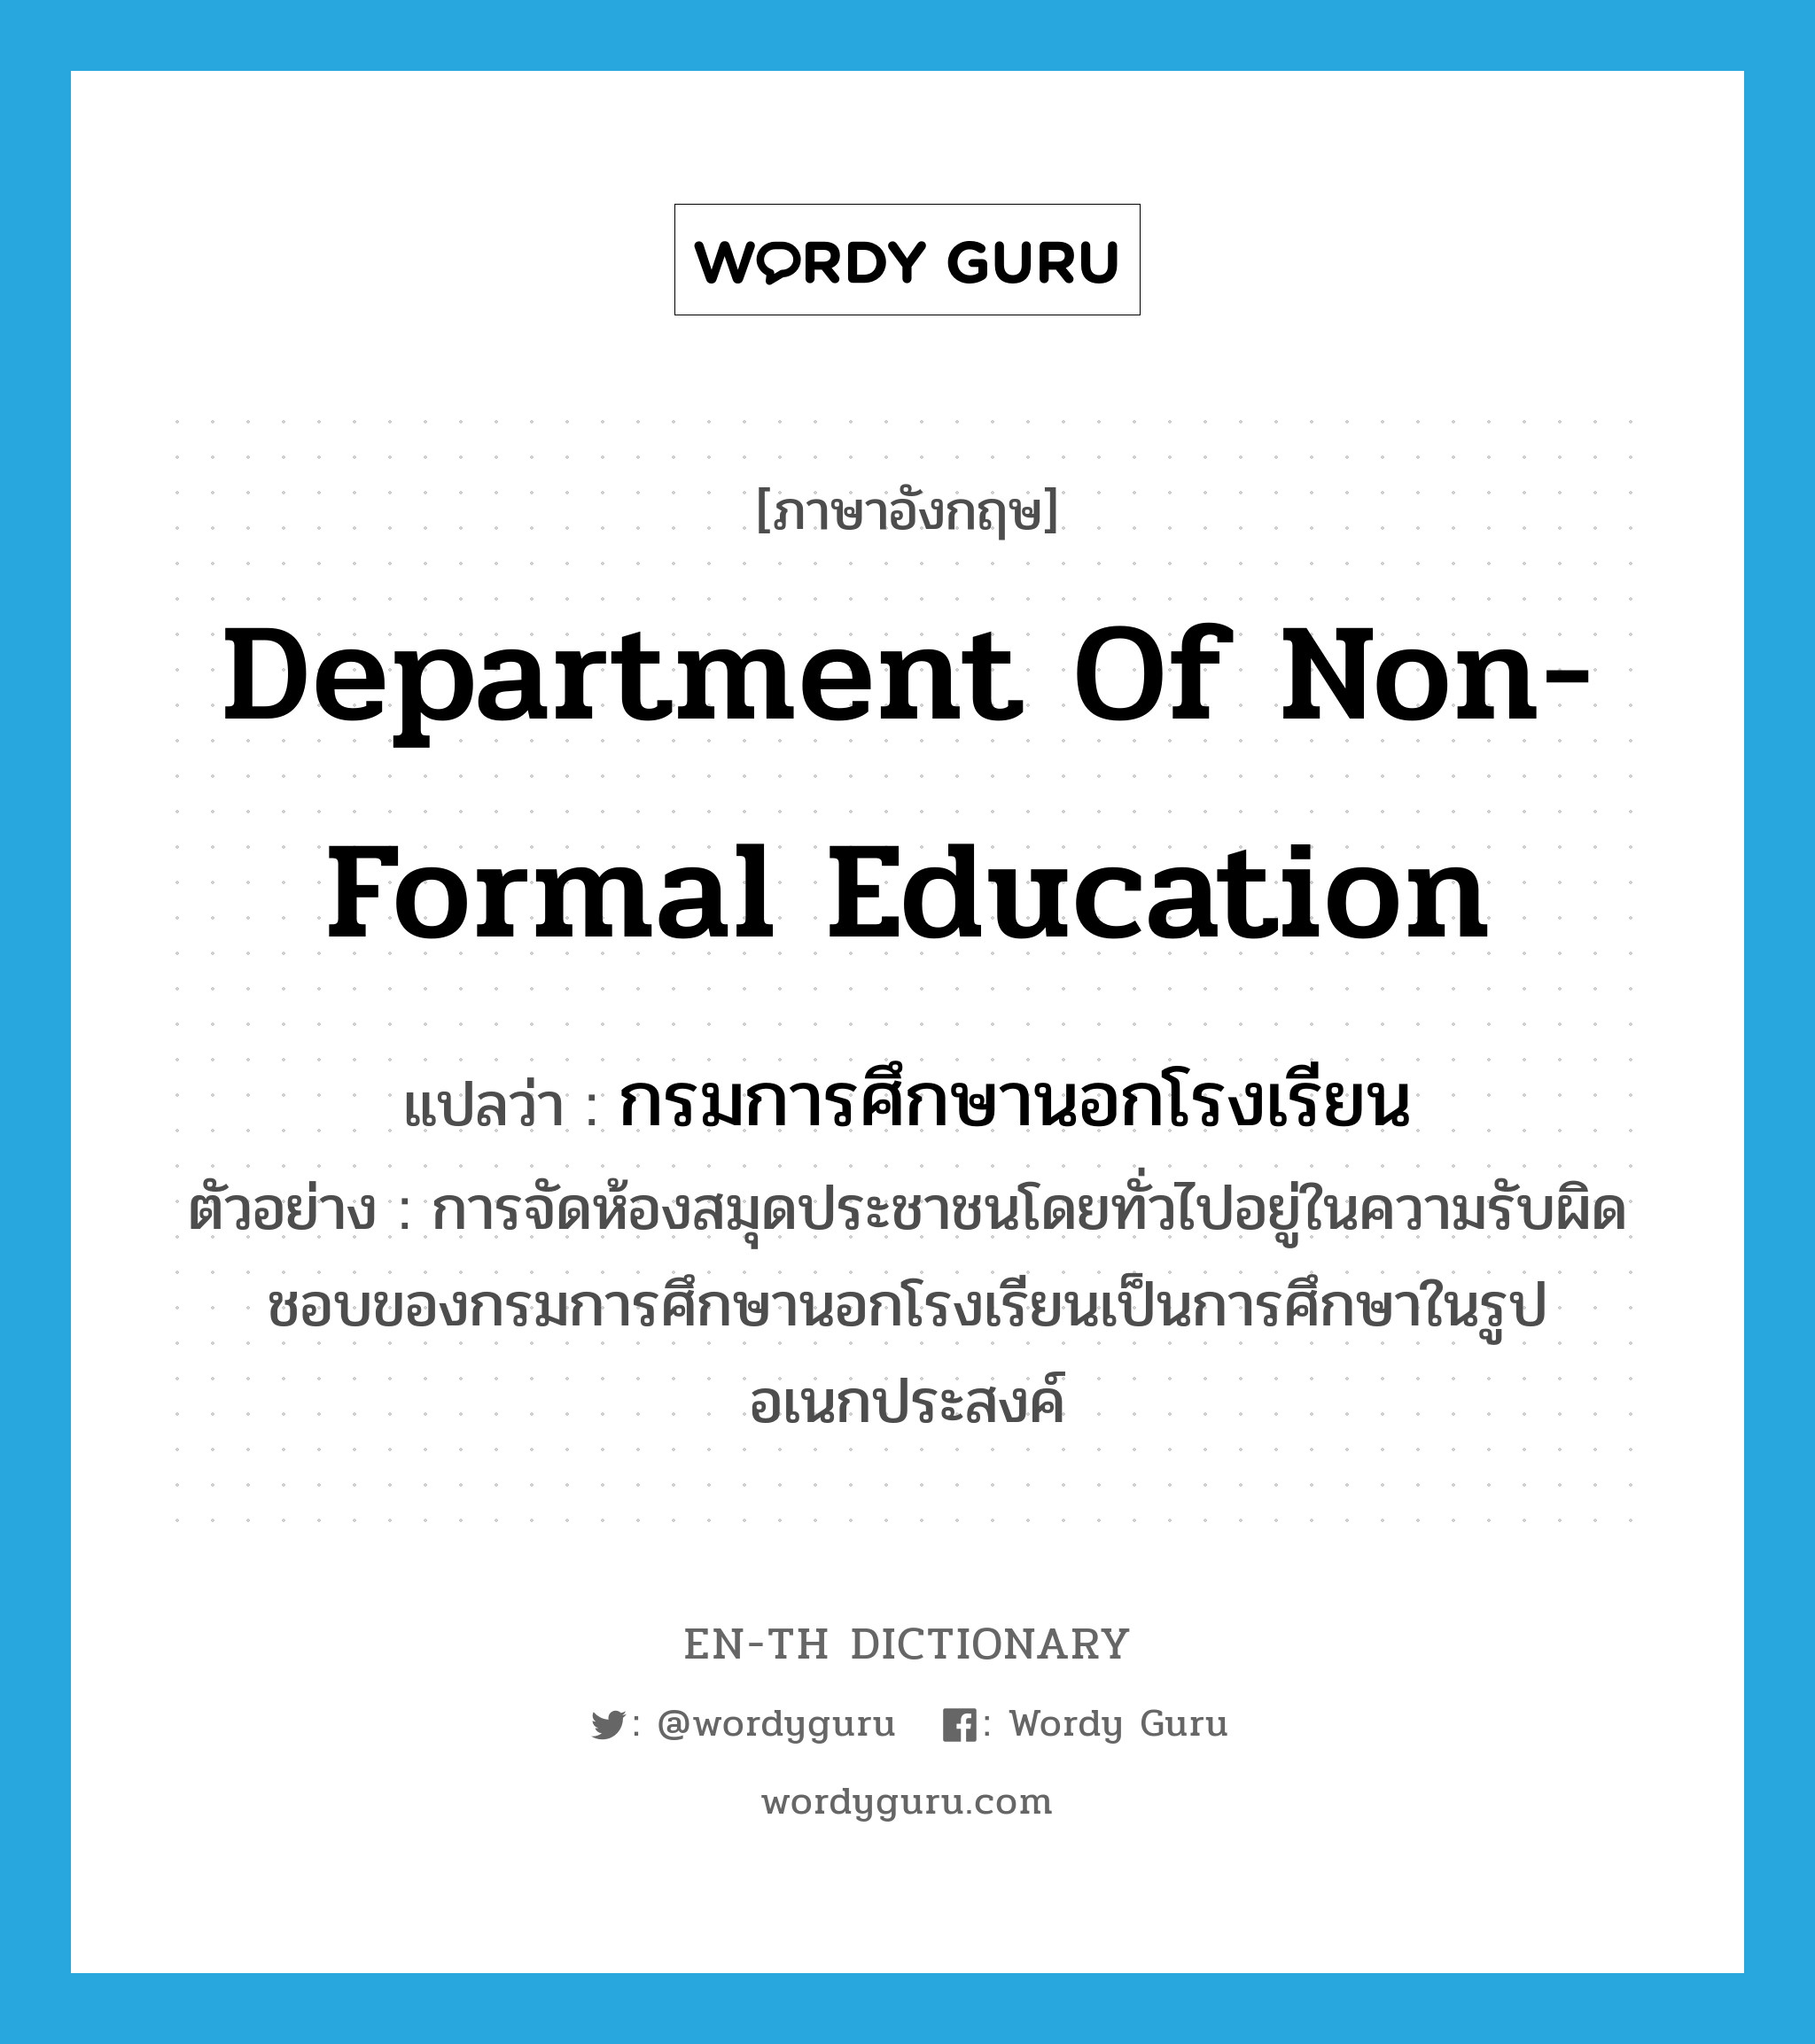 กรมการศึกษานอกโรงเรียน ภาษาอังกฤษ?, คำศัพท์ภาษาอังกฤษ กรมการศึกษานอกโรงเรียน แปลว่า Department of Non-Formal Education ประเภท N ตัวอย่าง การจัดห้องสมุดประชาชนโดยทั่วไปอยู่ในความรับผิดชอบของกรมการศึกษานอกโรงเรียนเป็นการศึกษาในรูปอเนกประสงค์ หมวด N